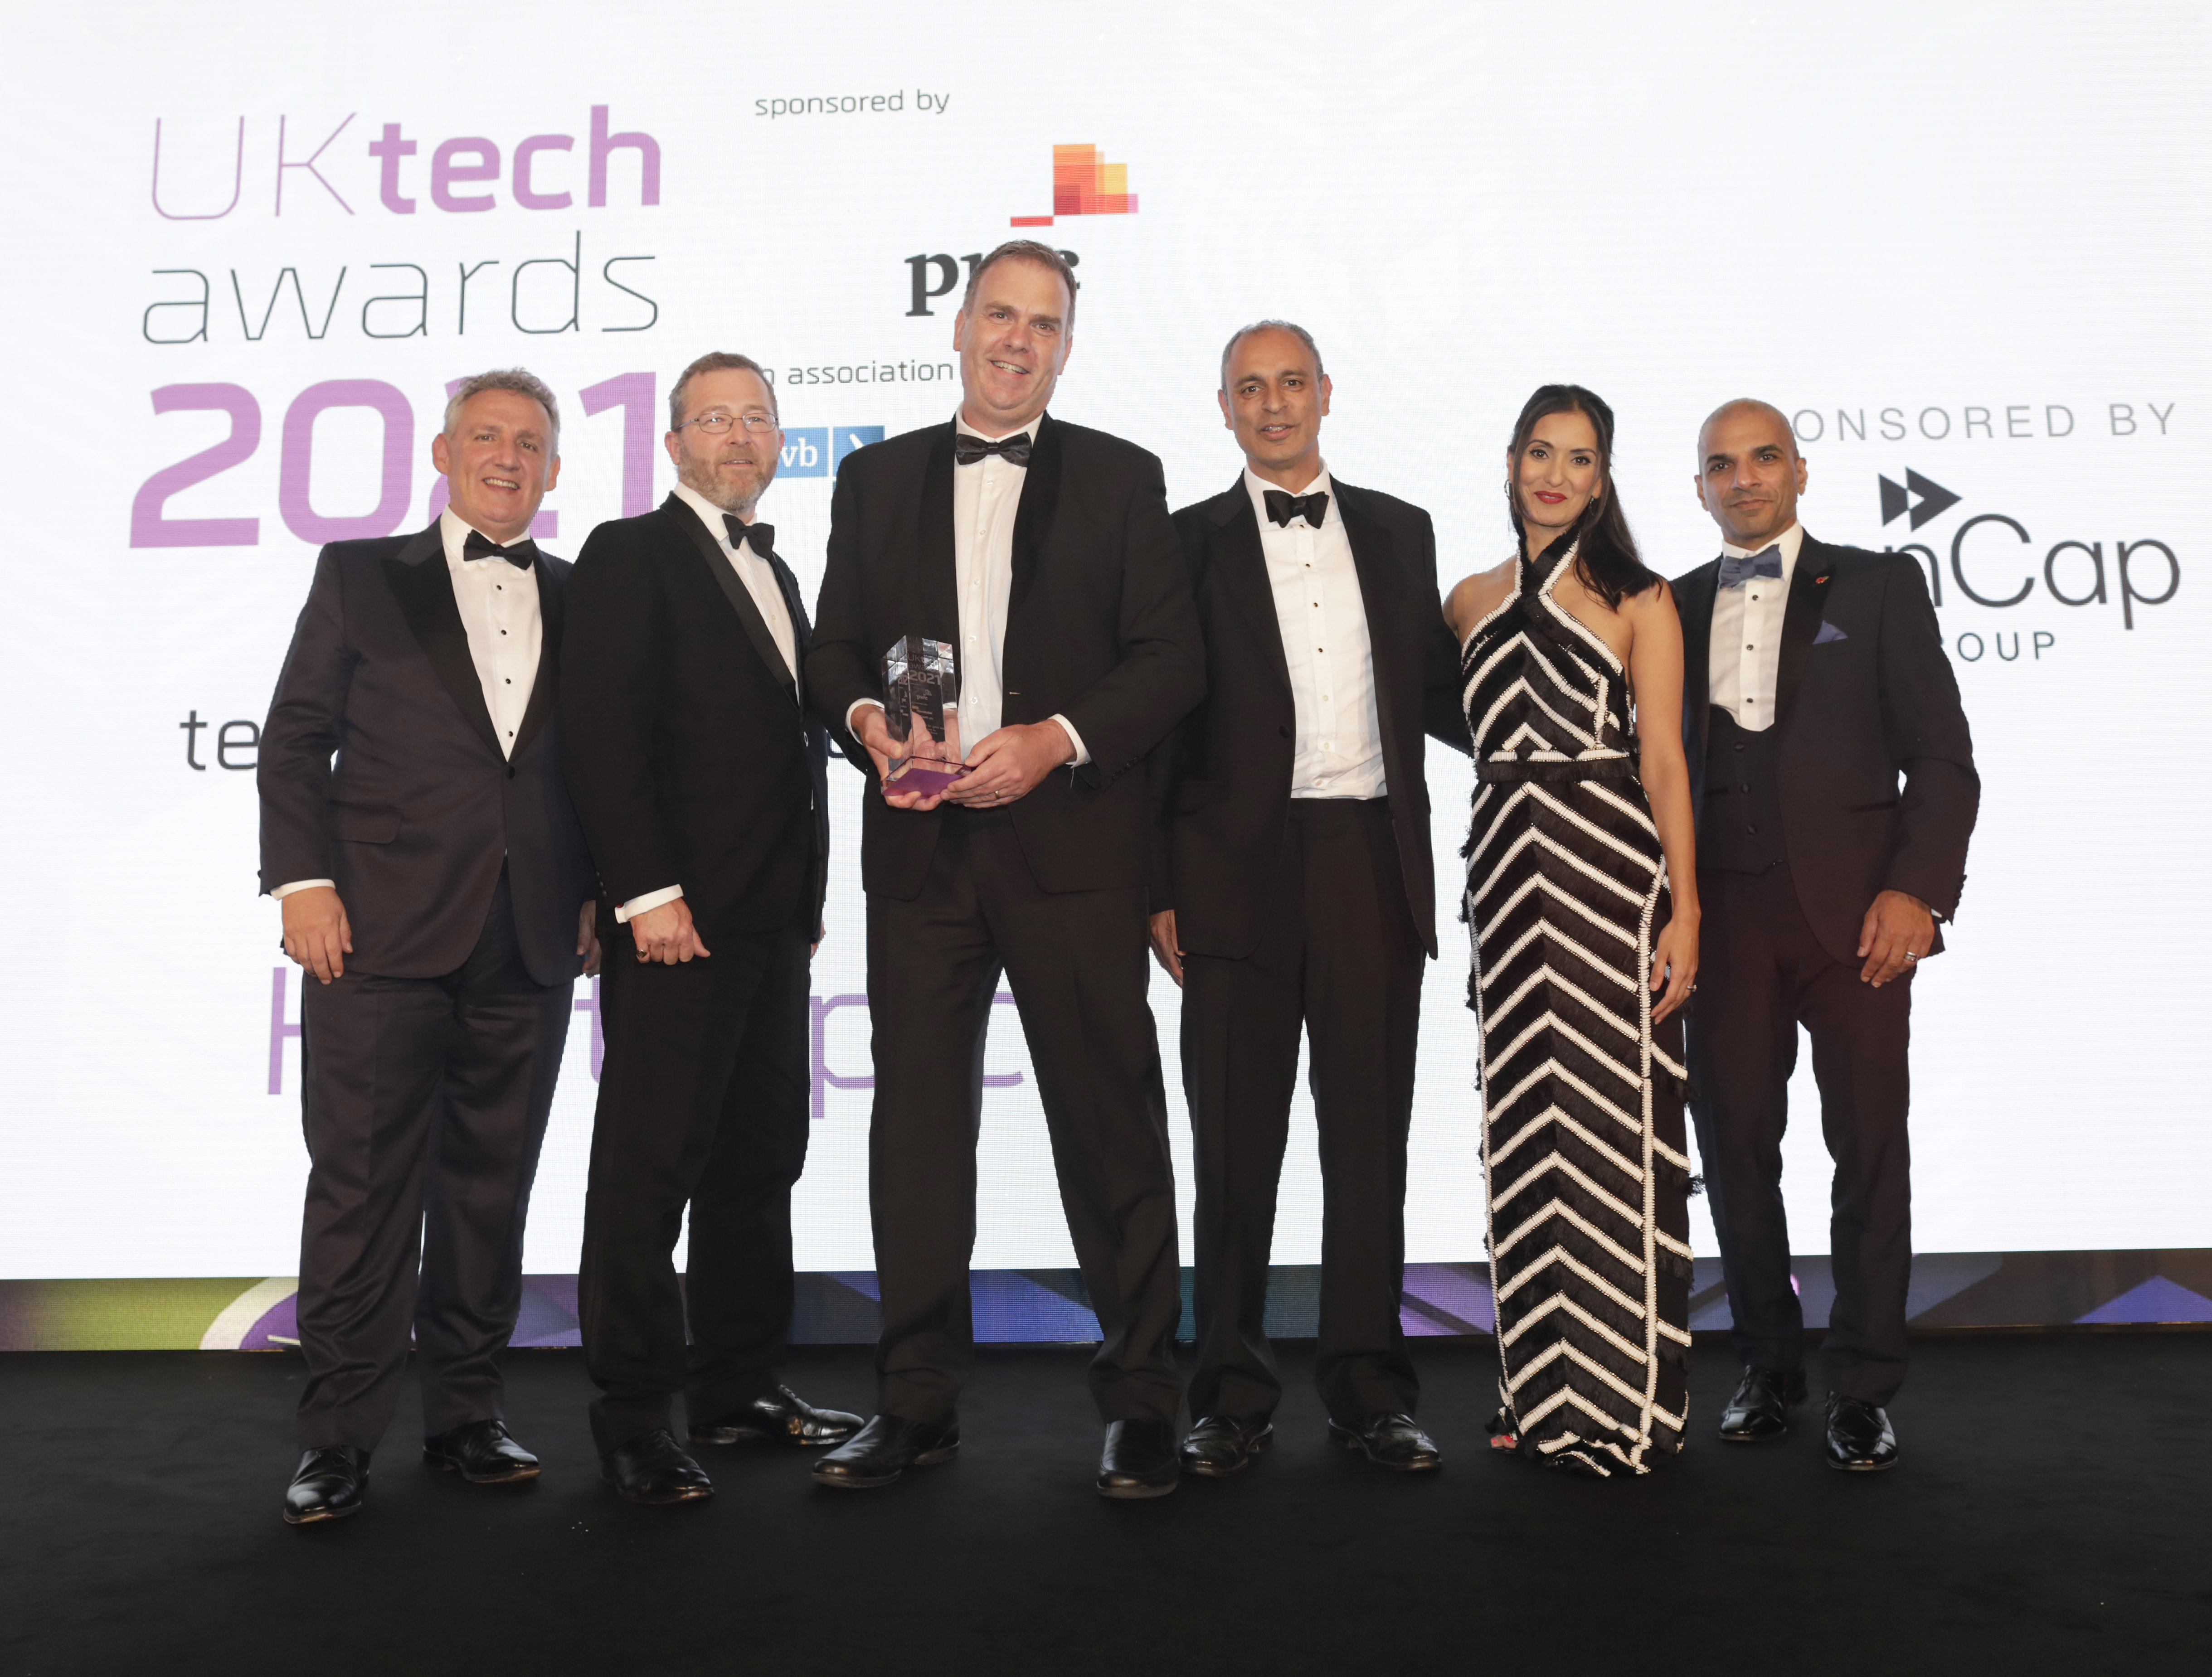 Kooth award UK Tech Awards 2021